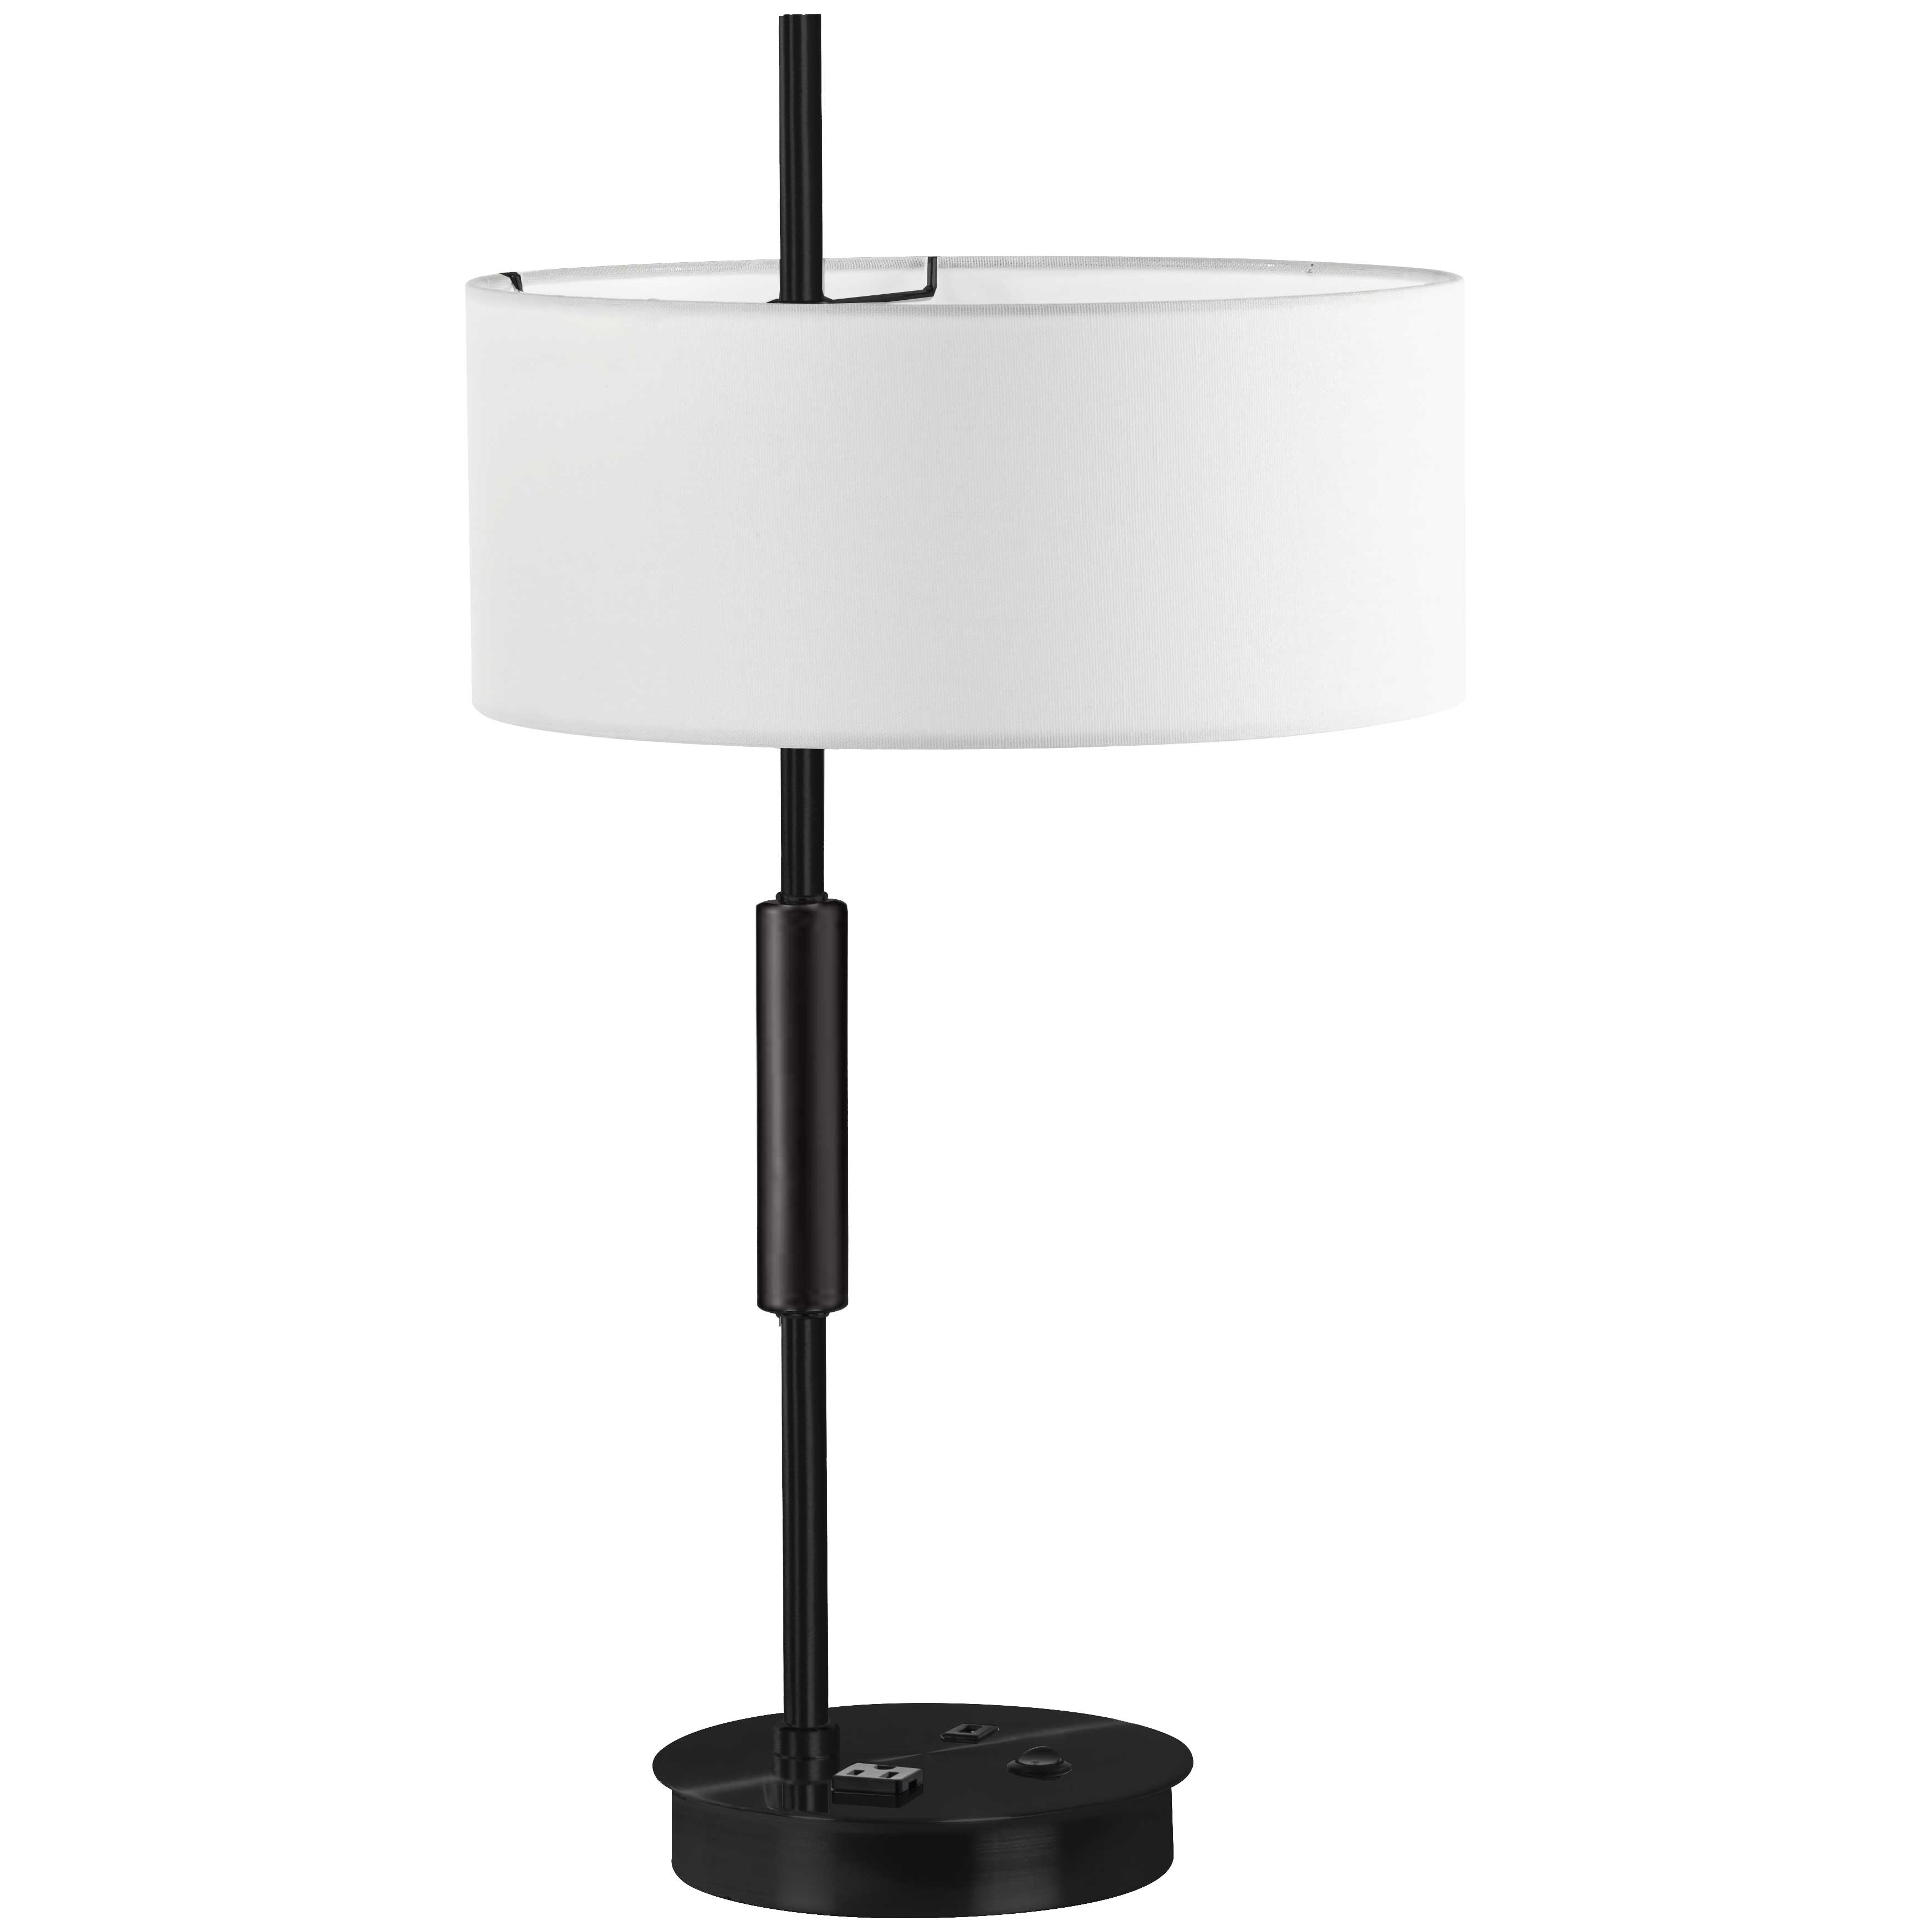 FITZGERALD Lampe sur table Noir - FTG-261T-MB-WH | DAINOLITE